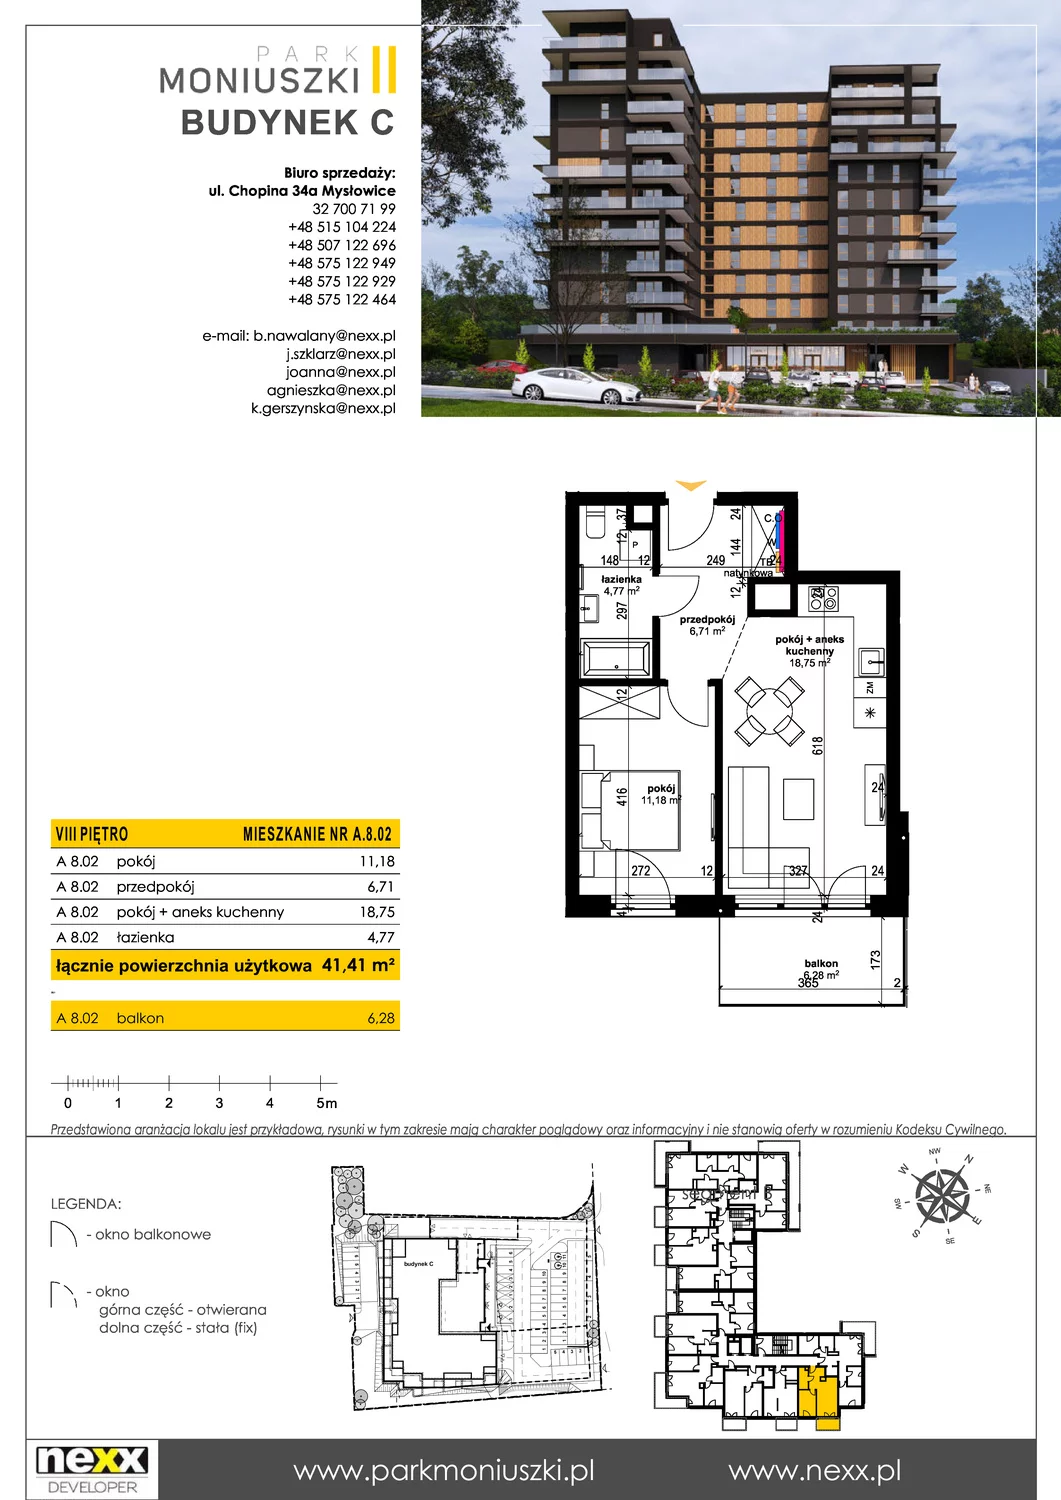 Mieszkanie 41,30 m², piętro 8, oferta nr A 8.02, Osiedle Park Moniuszki, Mysłowice, ul. Okrzei / Wielka Skotnica